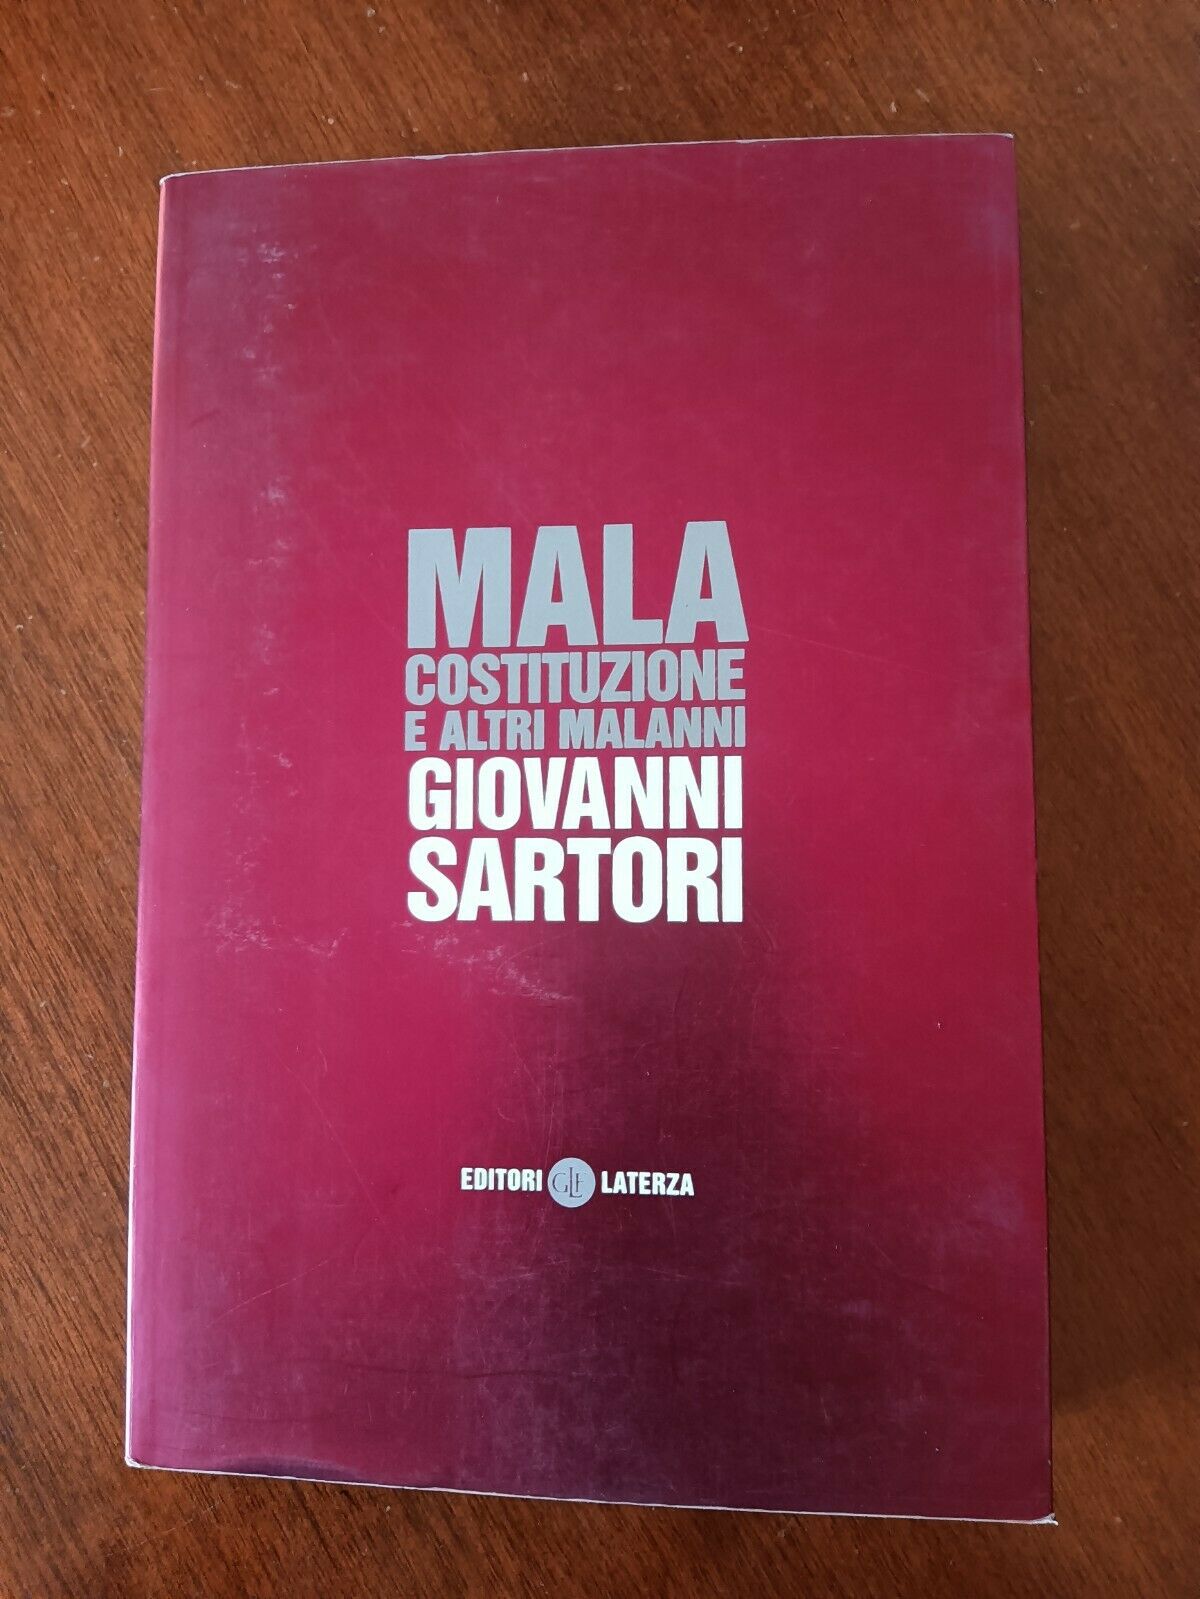 Mala costituzione e altri malanni | Giovanni Sartori - Laterza